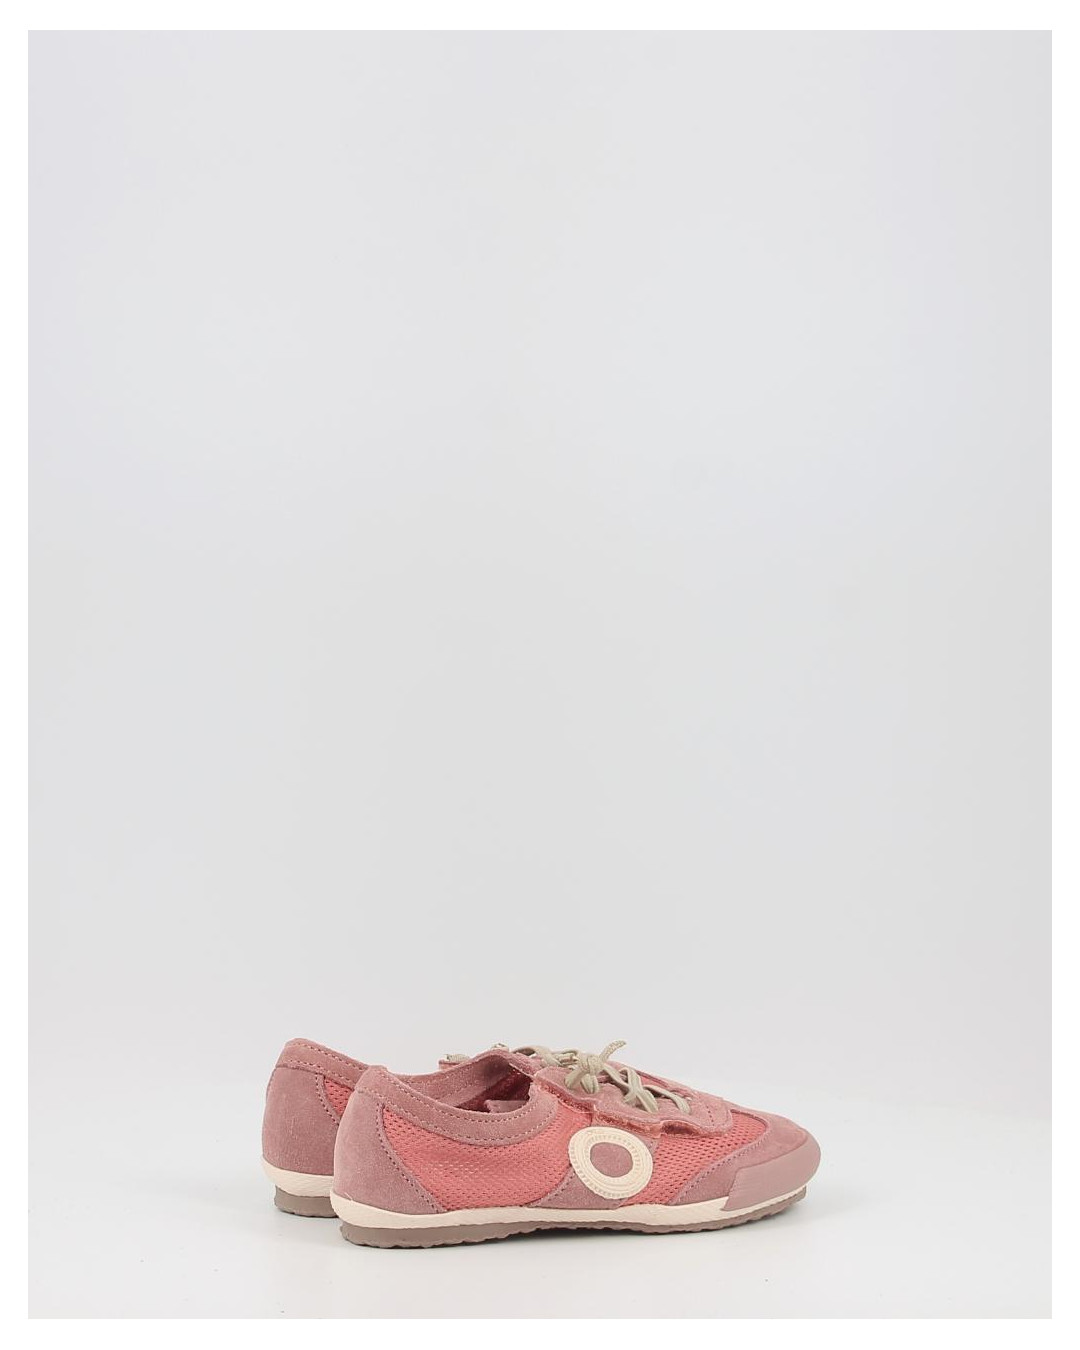 Zapatos deportivos Aro JOANETA PETIT NET 93350 rosa. Zapatos